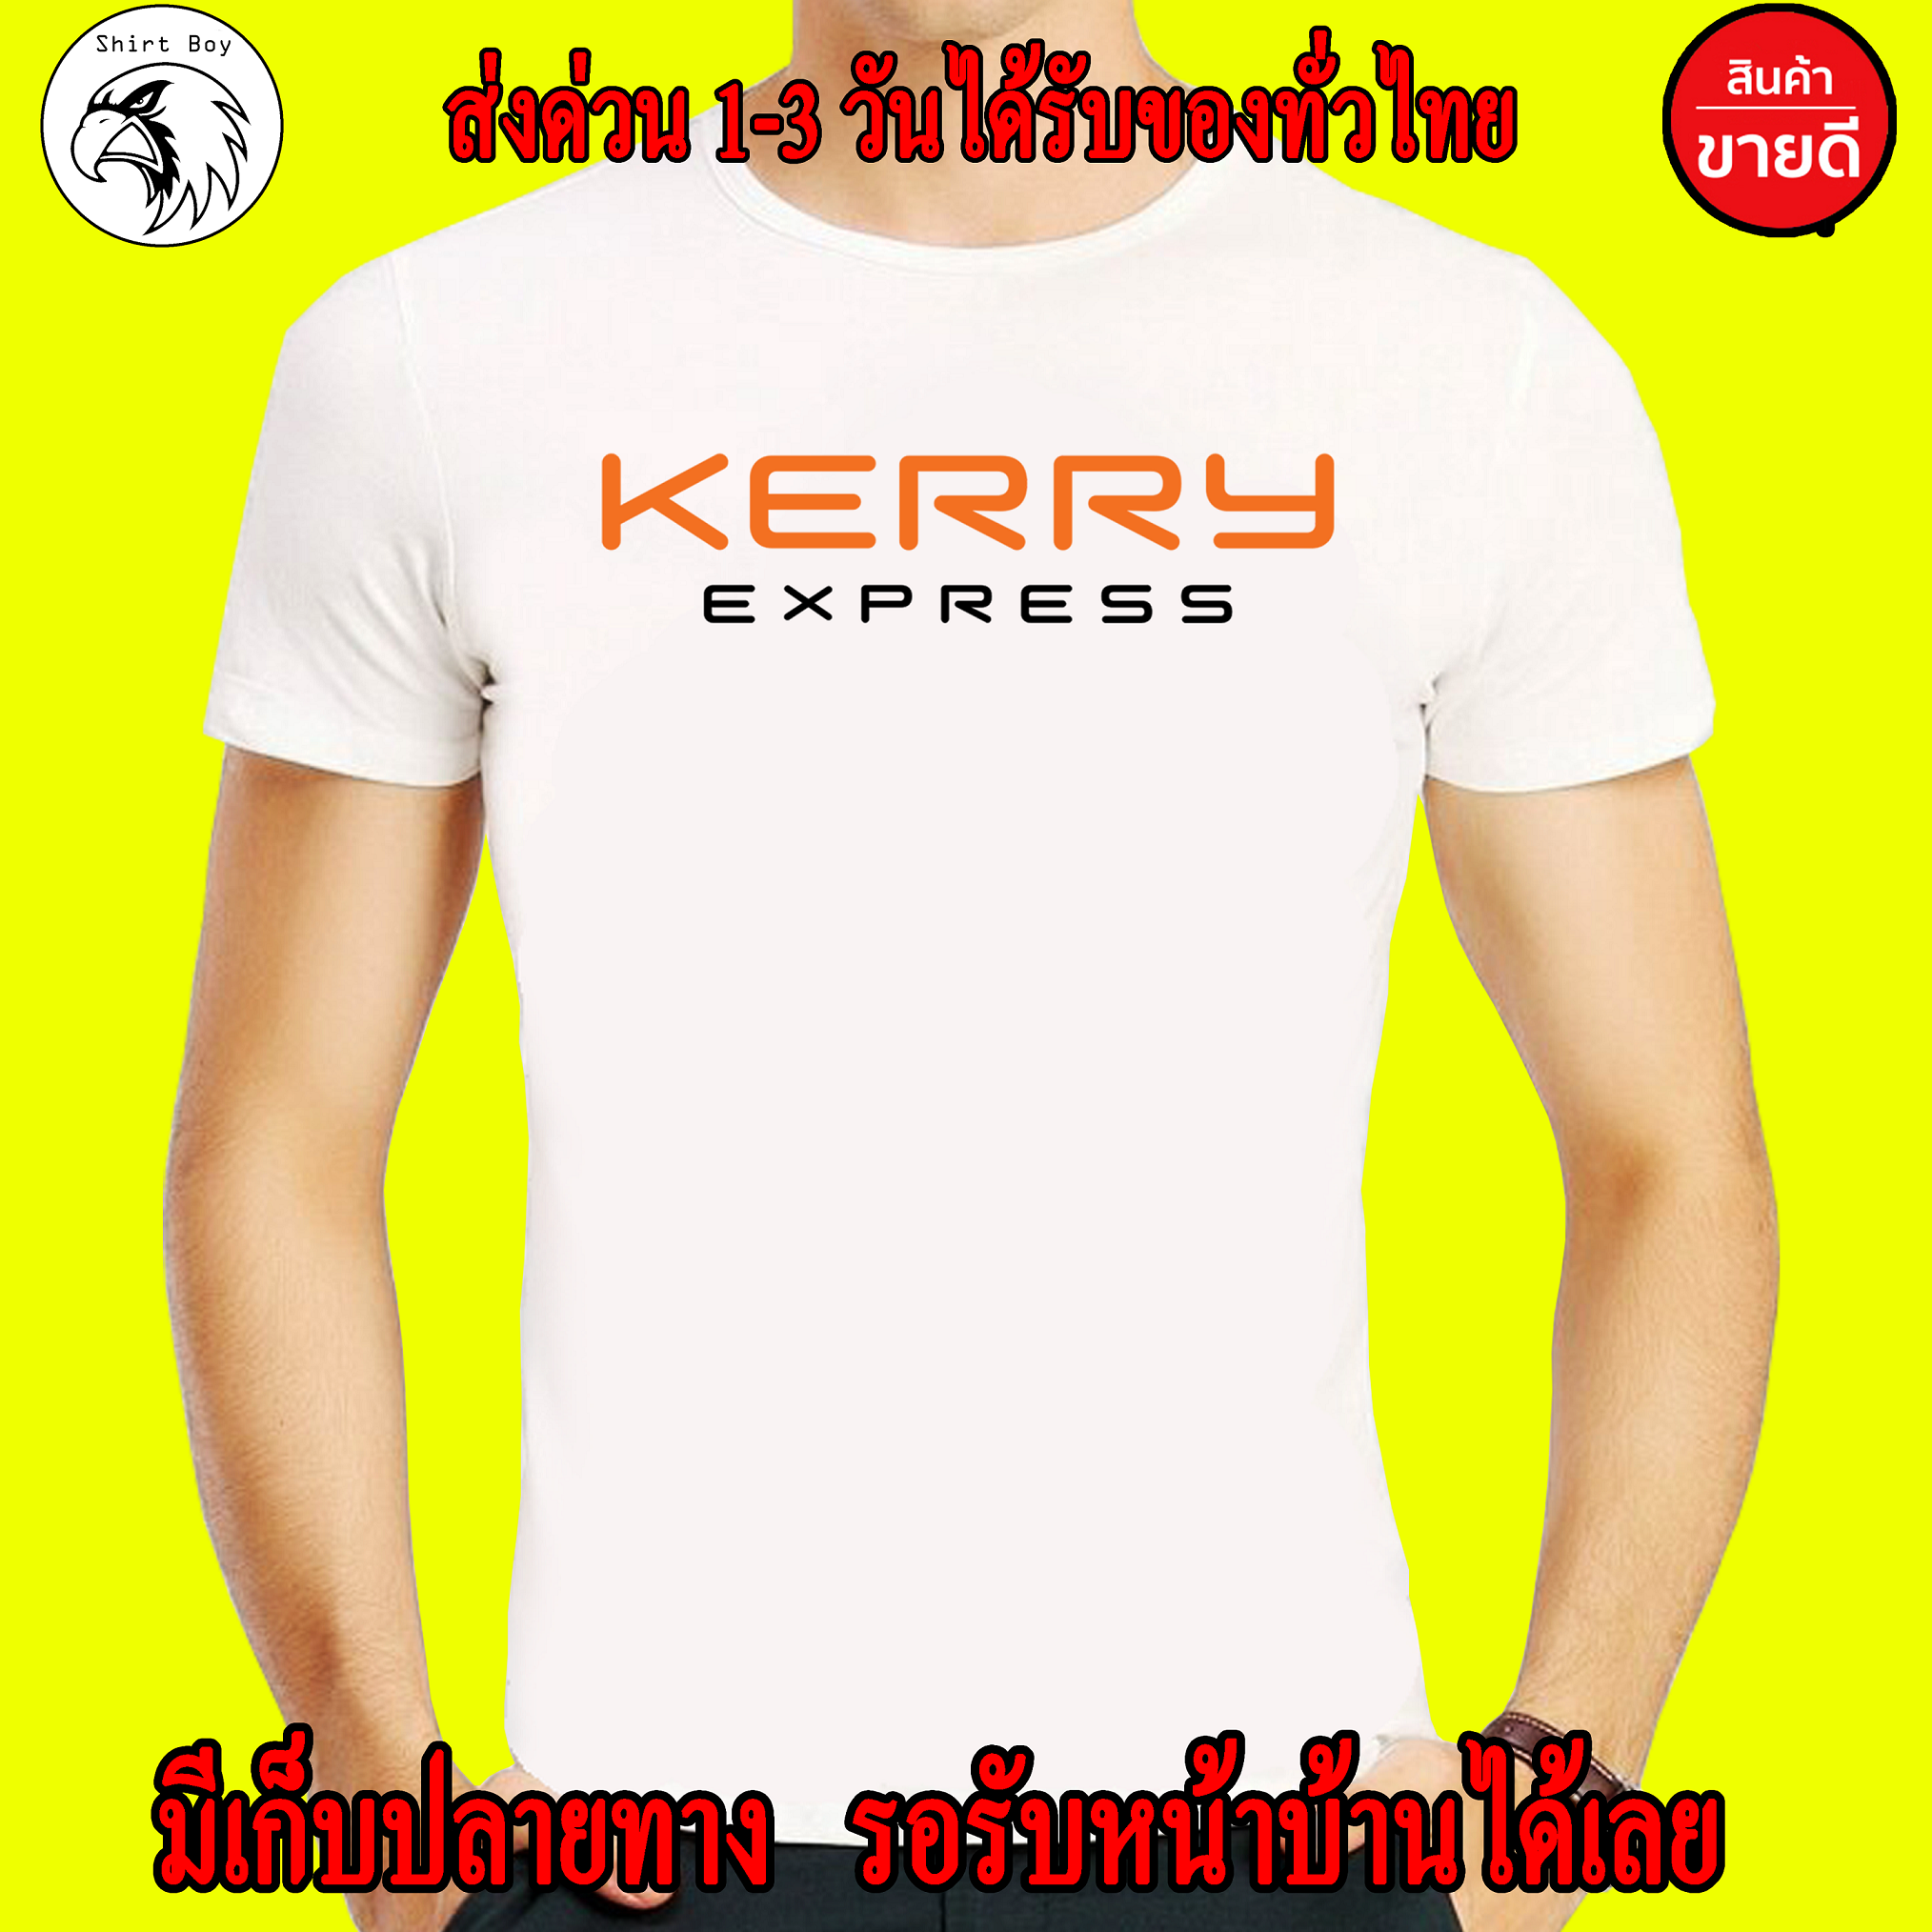 เสื้อยืด Kerry เกรดพรีเมี่ยม Cotton 100% สกรีนแบบเฟล็ก PU สวยสดไม่แตกไม่ลอก ส่งด่วนทั่วไทย